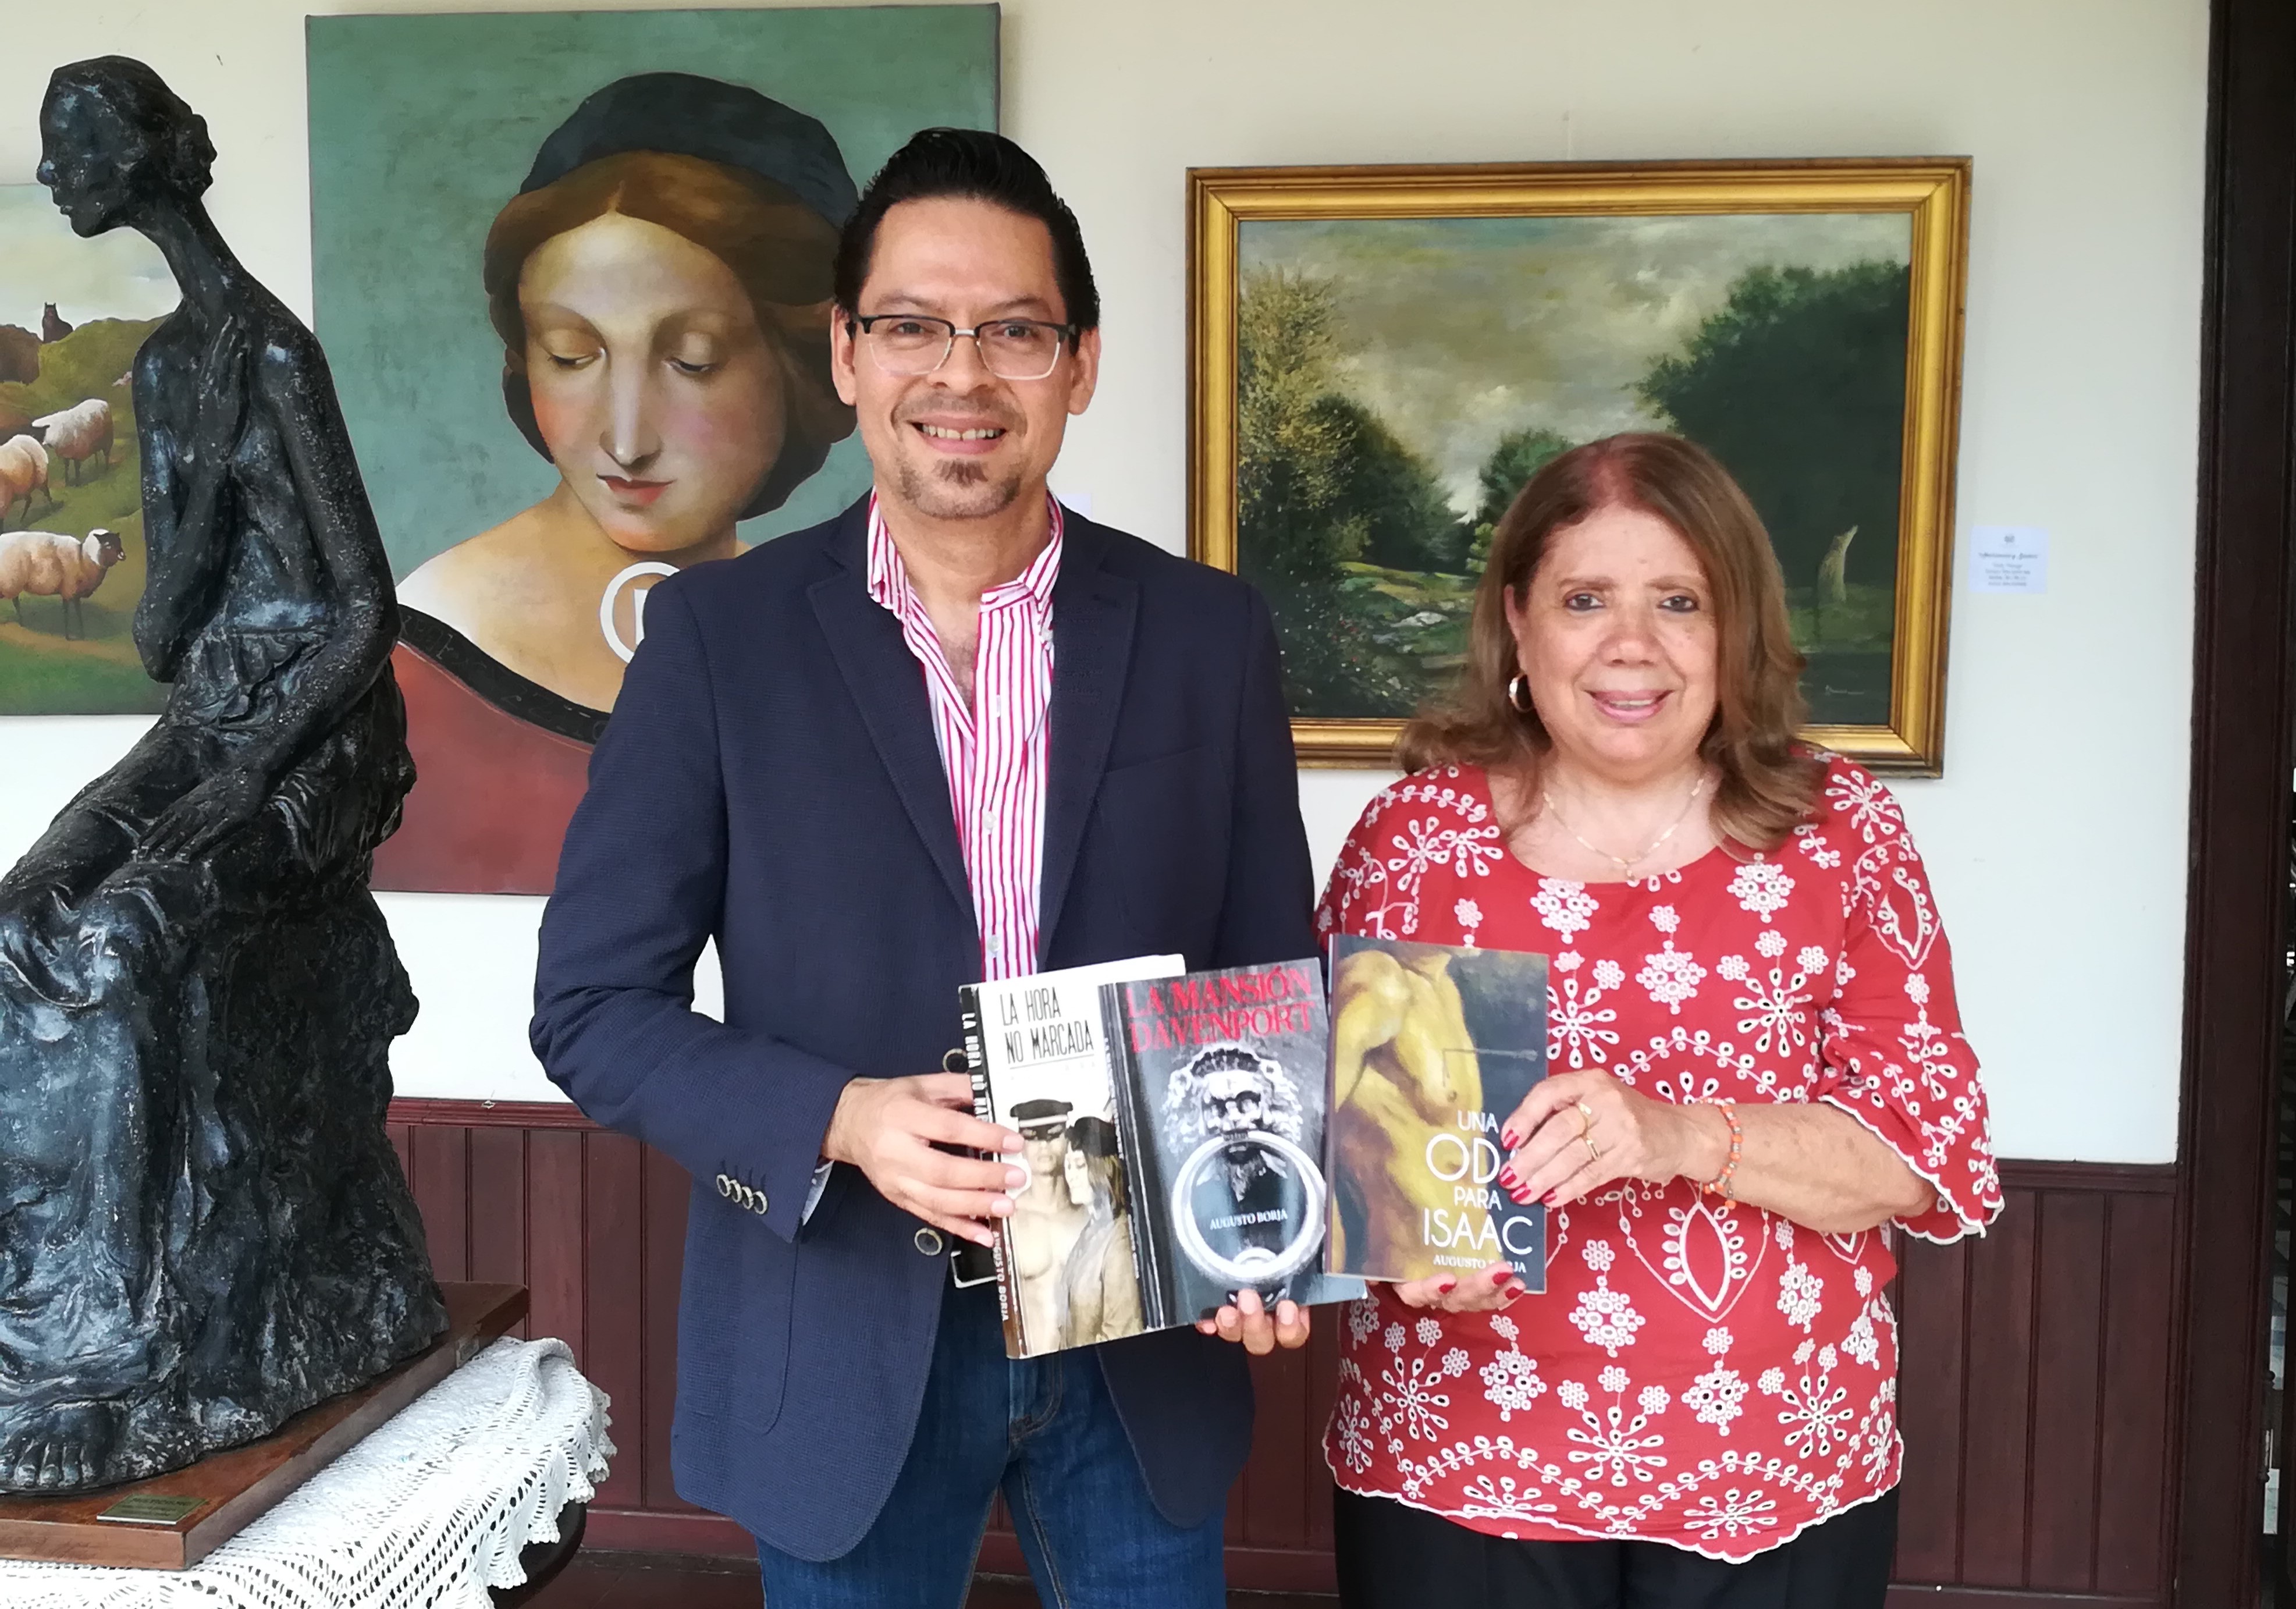 Exitoso novelista salvadoreño lanza su libro en la Biblioteca Legislativa